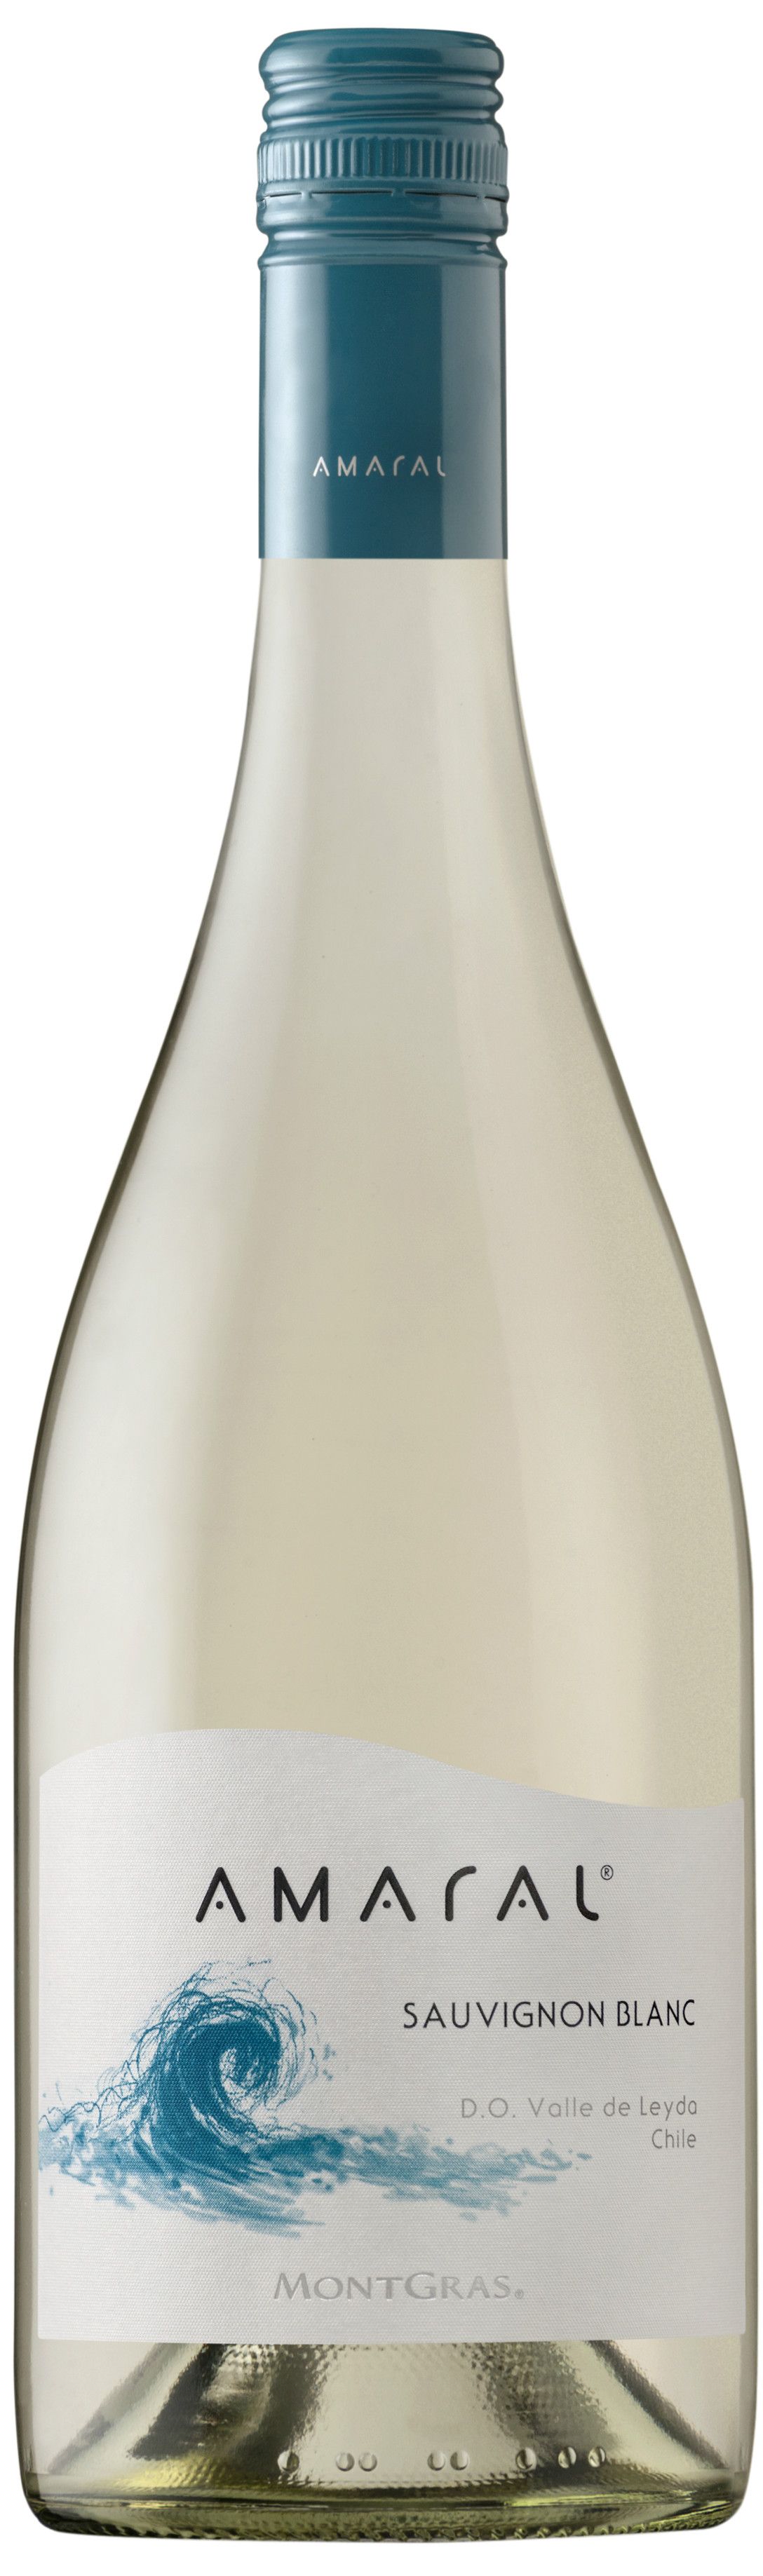 Montgras, Amaral Sauvignon Blanc, 2017